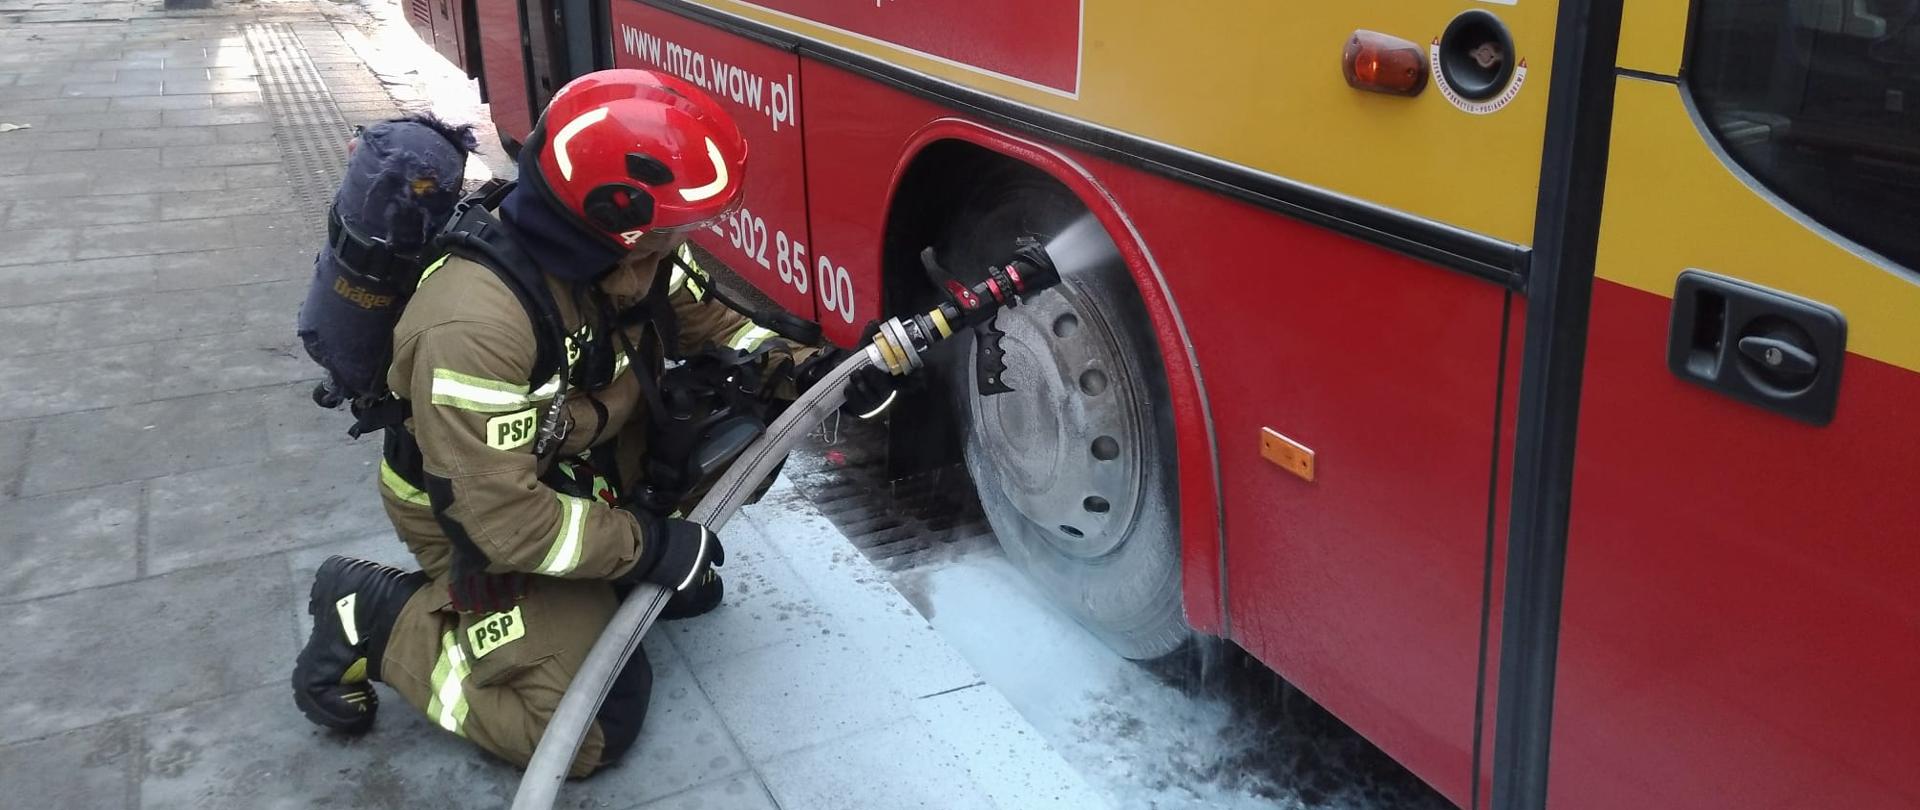 Na zdjęciu widać autobus koloru żółto- czerwonego w którym doszło do pożaru układu hamulcowego. Strażak w piaskowym ubraniu specjalnym wyposażony w aparat dróg oddechowych, który chłodzi powierzchnie elementów objęte pożarem